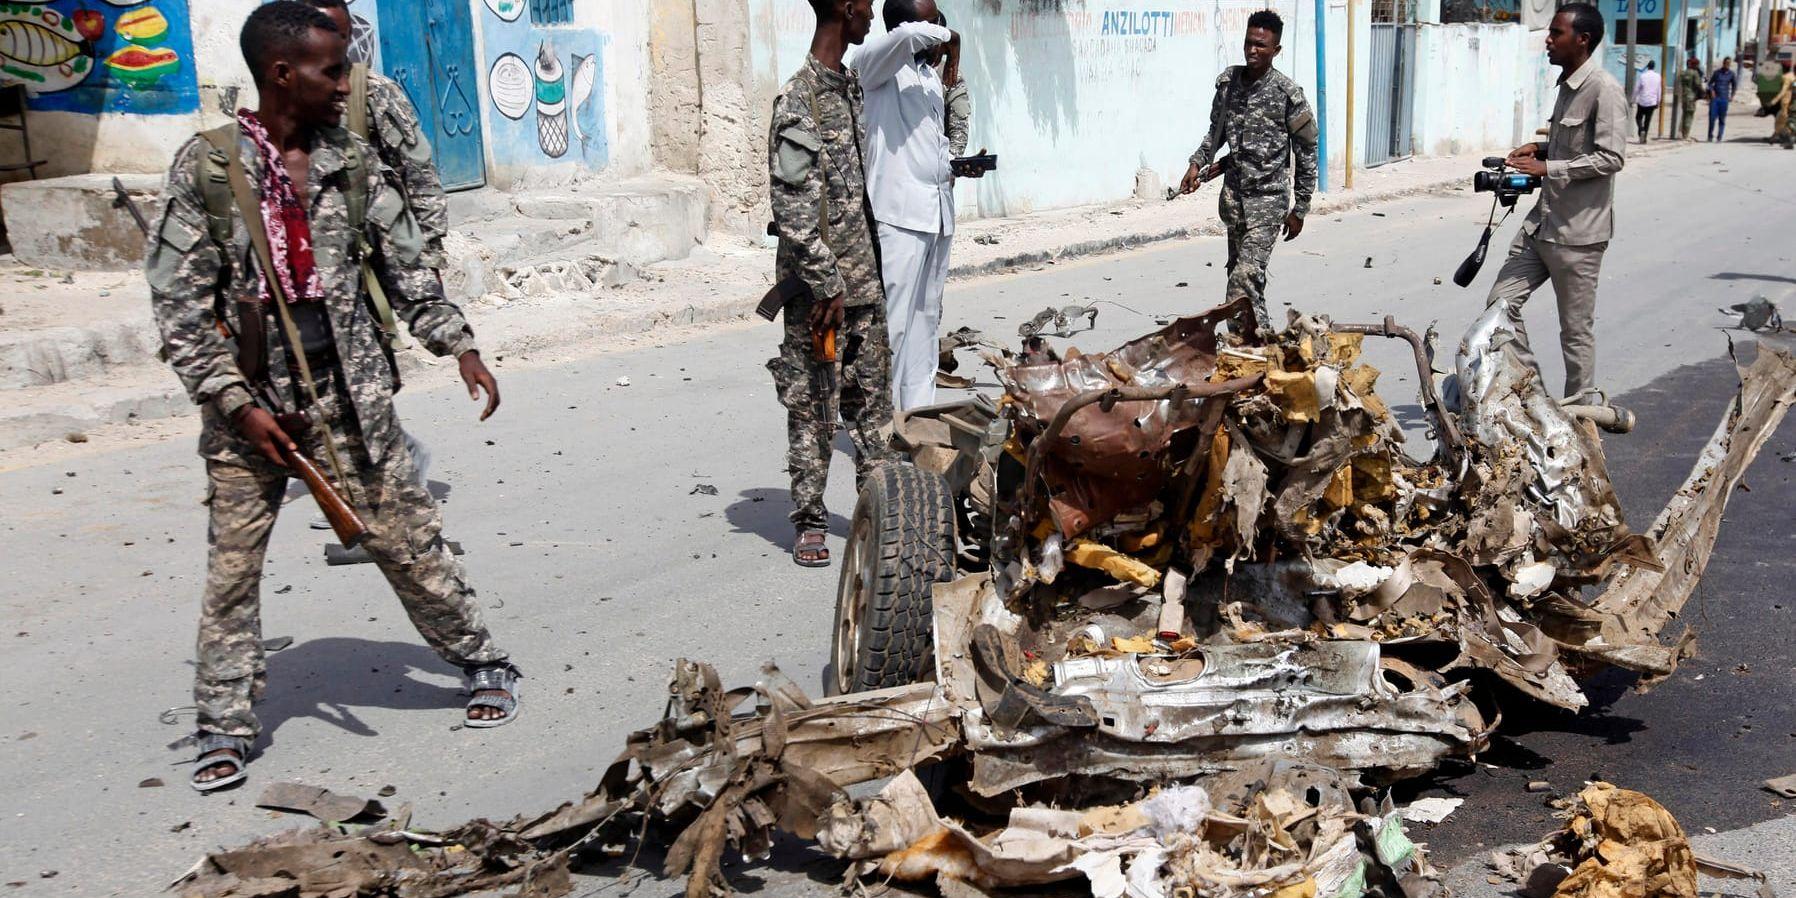 Våld och död har präglat Somalia under lång tid. I lördags exploderade en bilbomb nära presidentpalatset i Mogadishu.